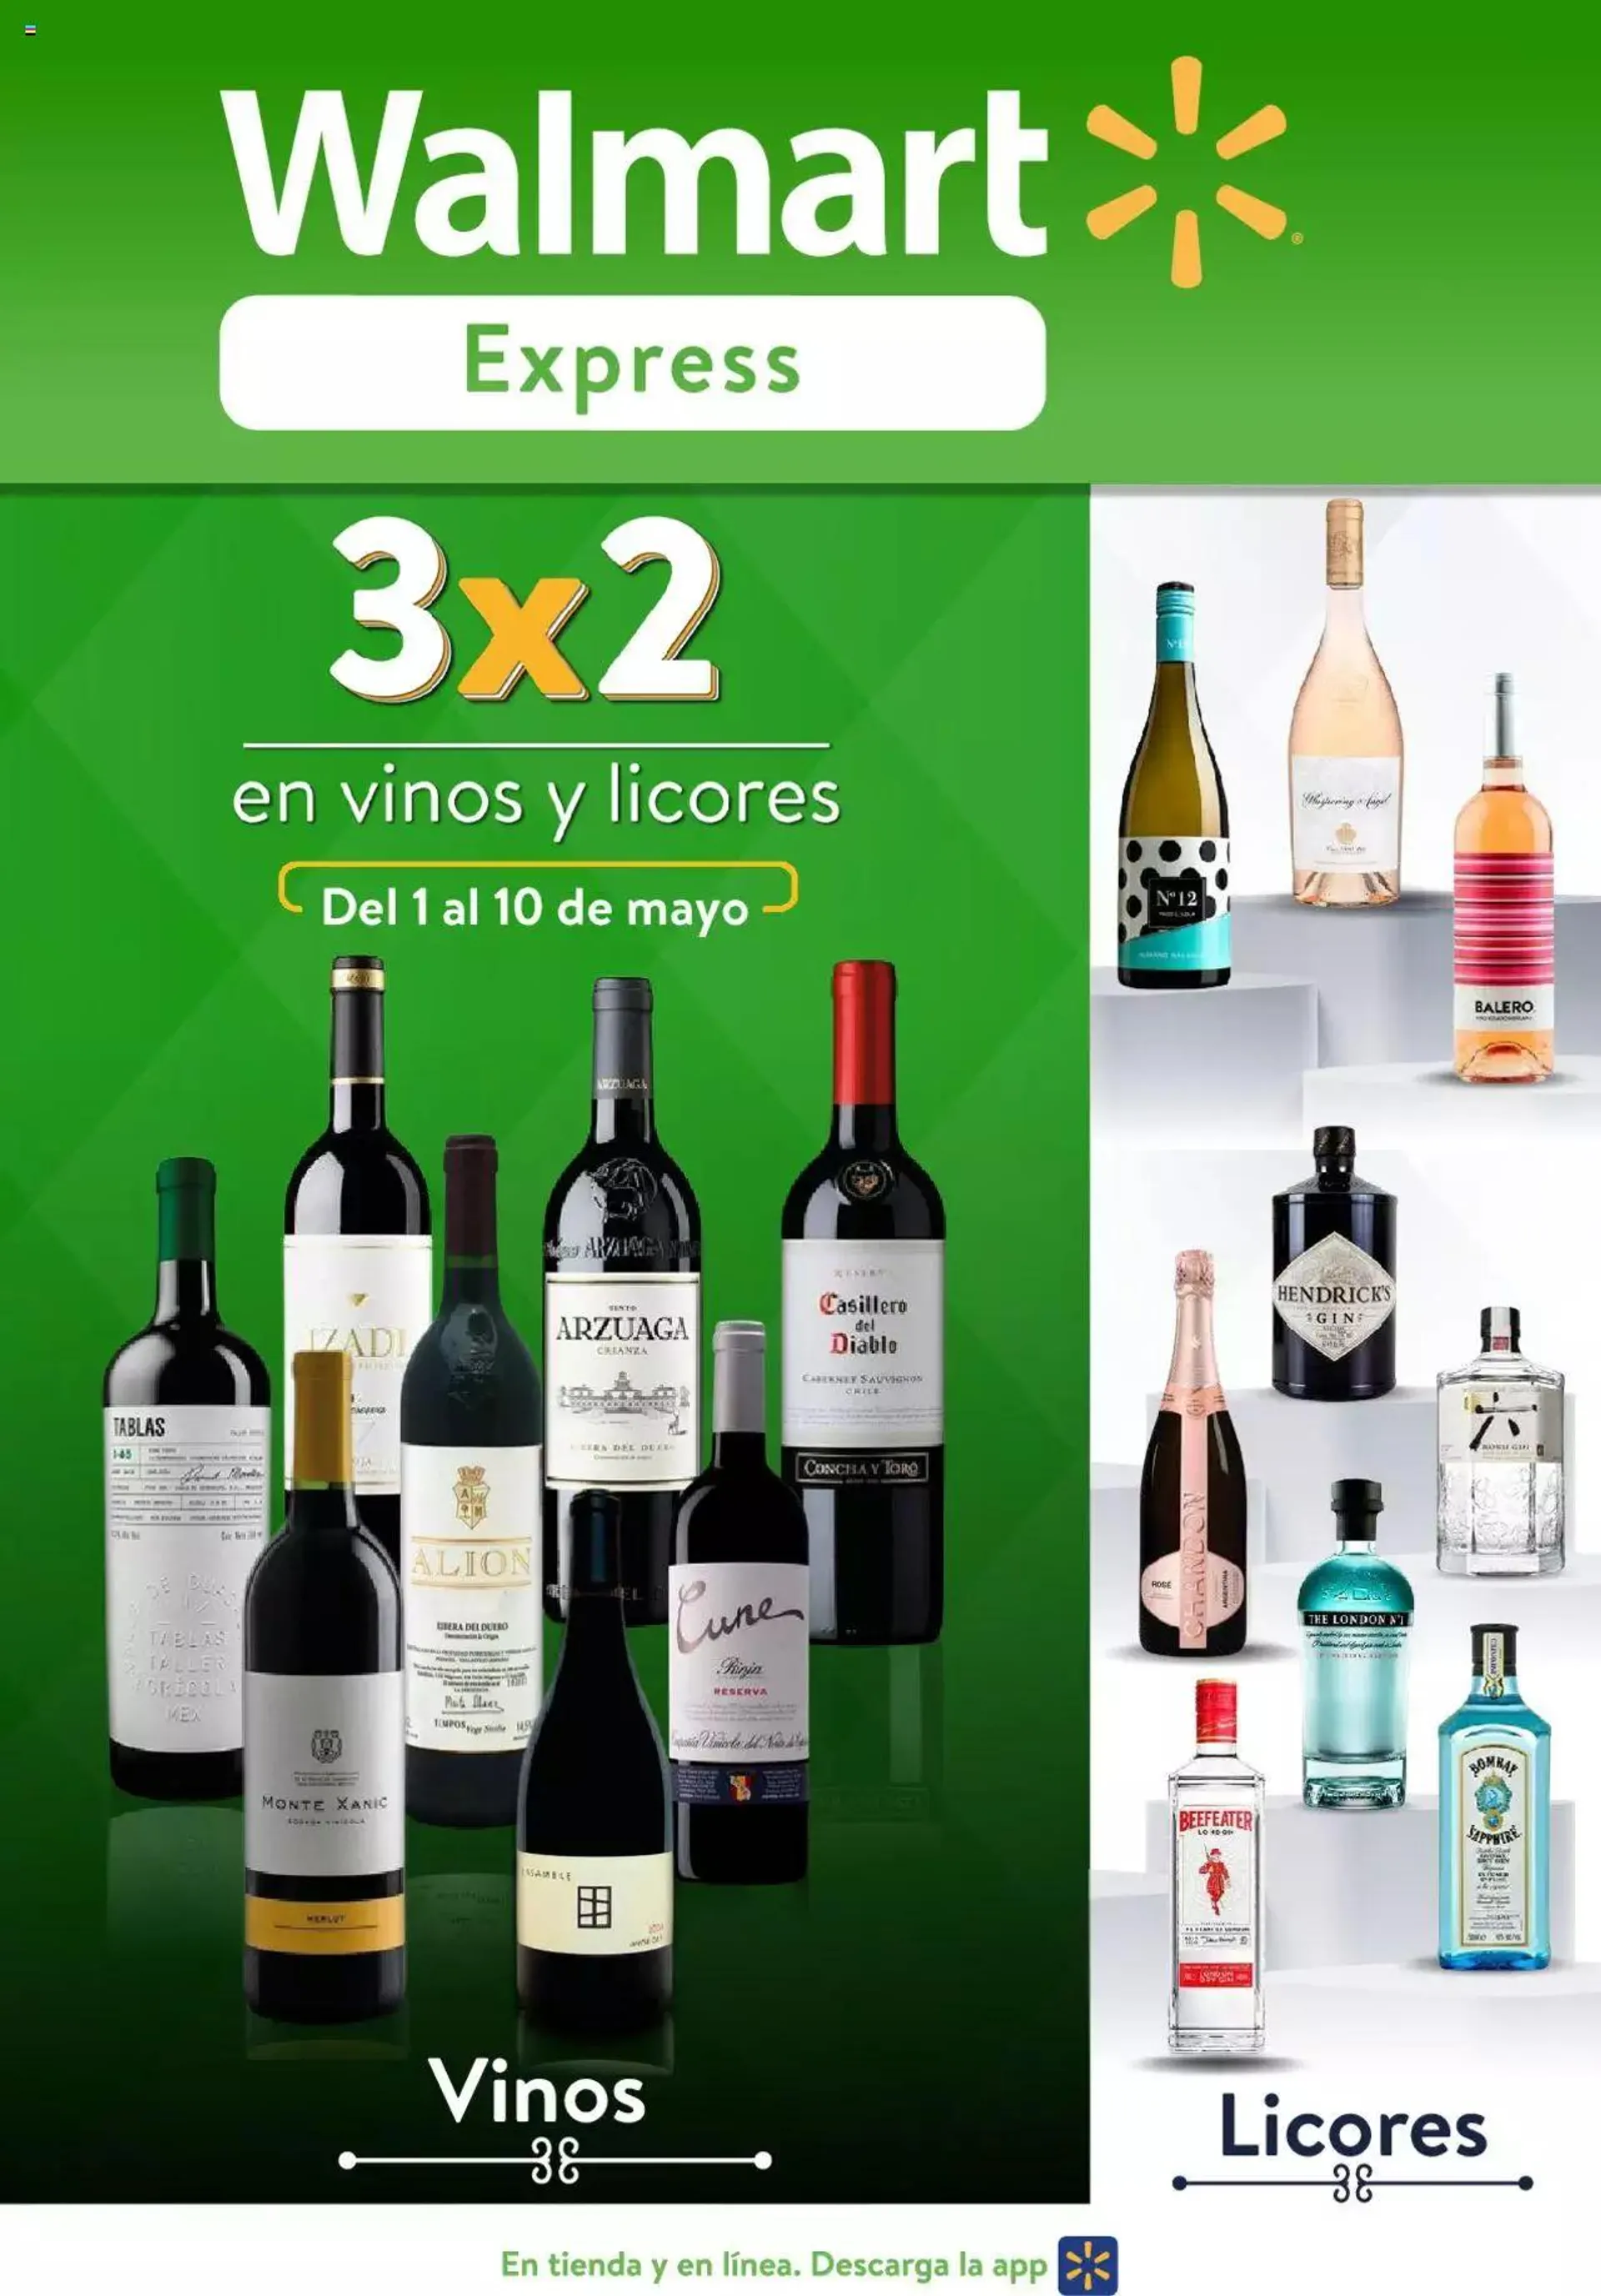 Walmart Express folleto Vinos y Licores - 0